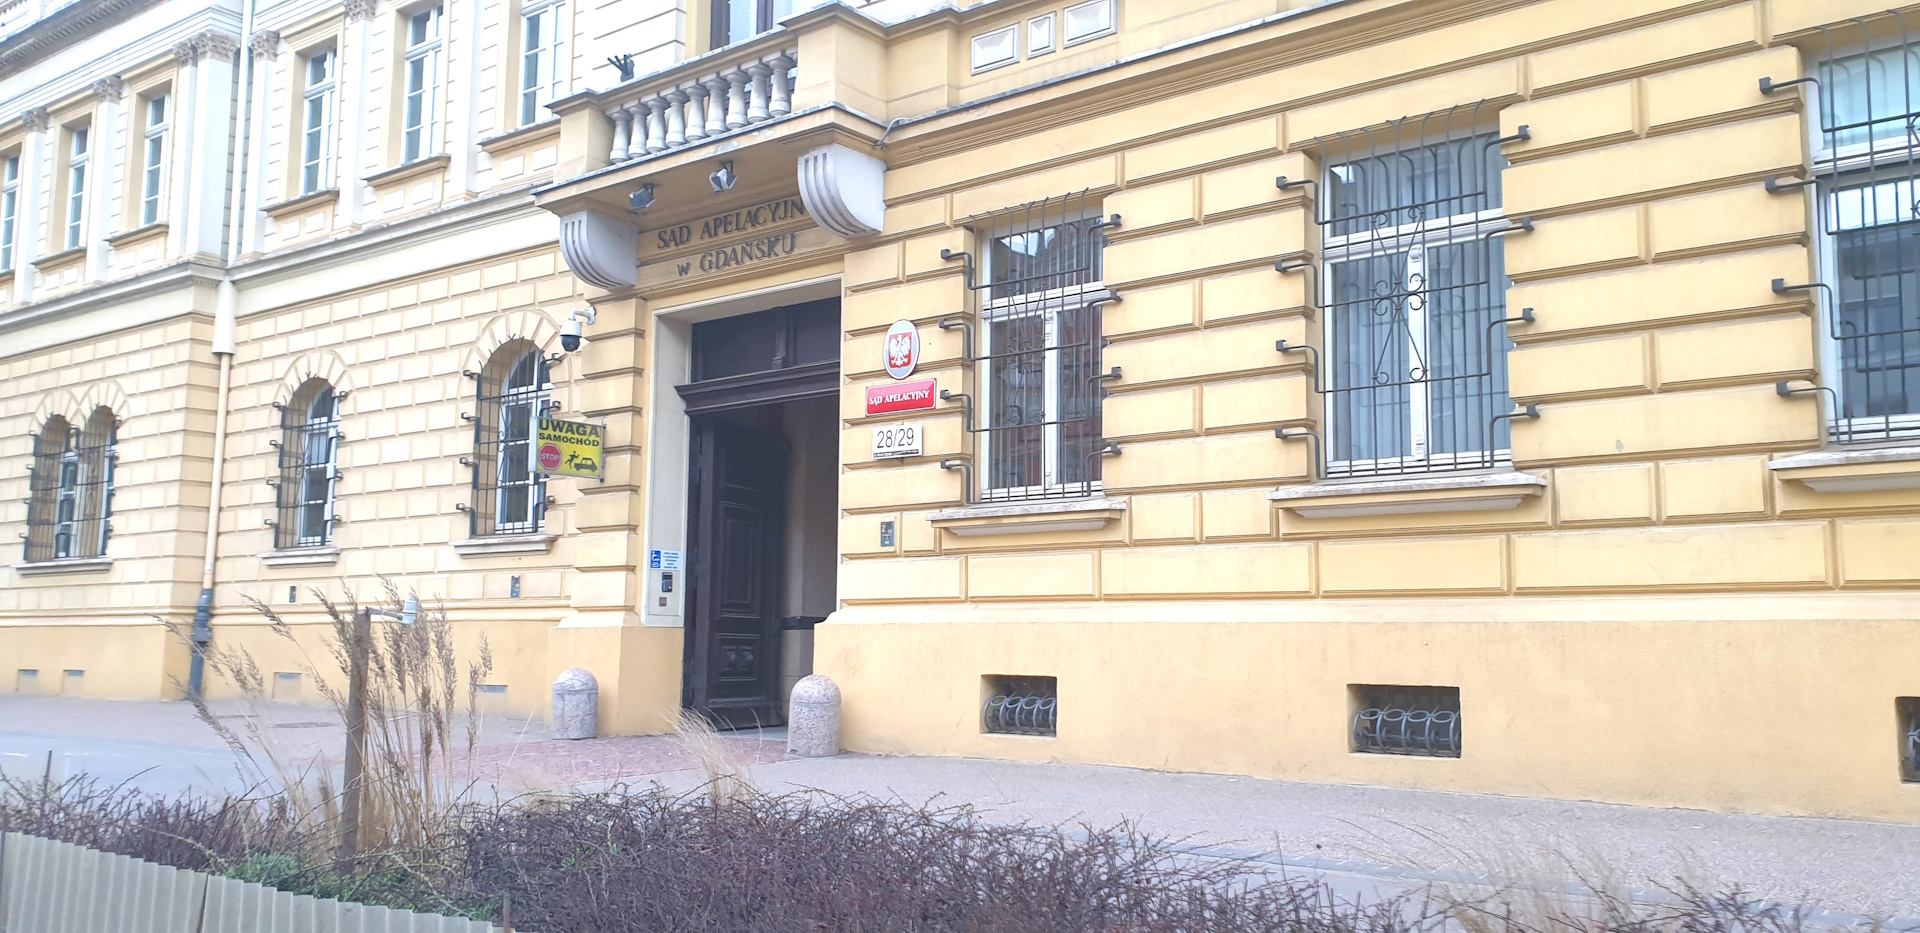 Budynek Sądu Apelacyjnego w Gdańsku